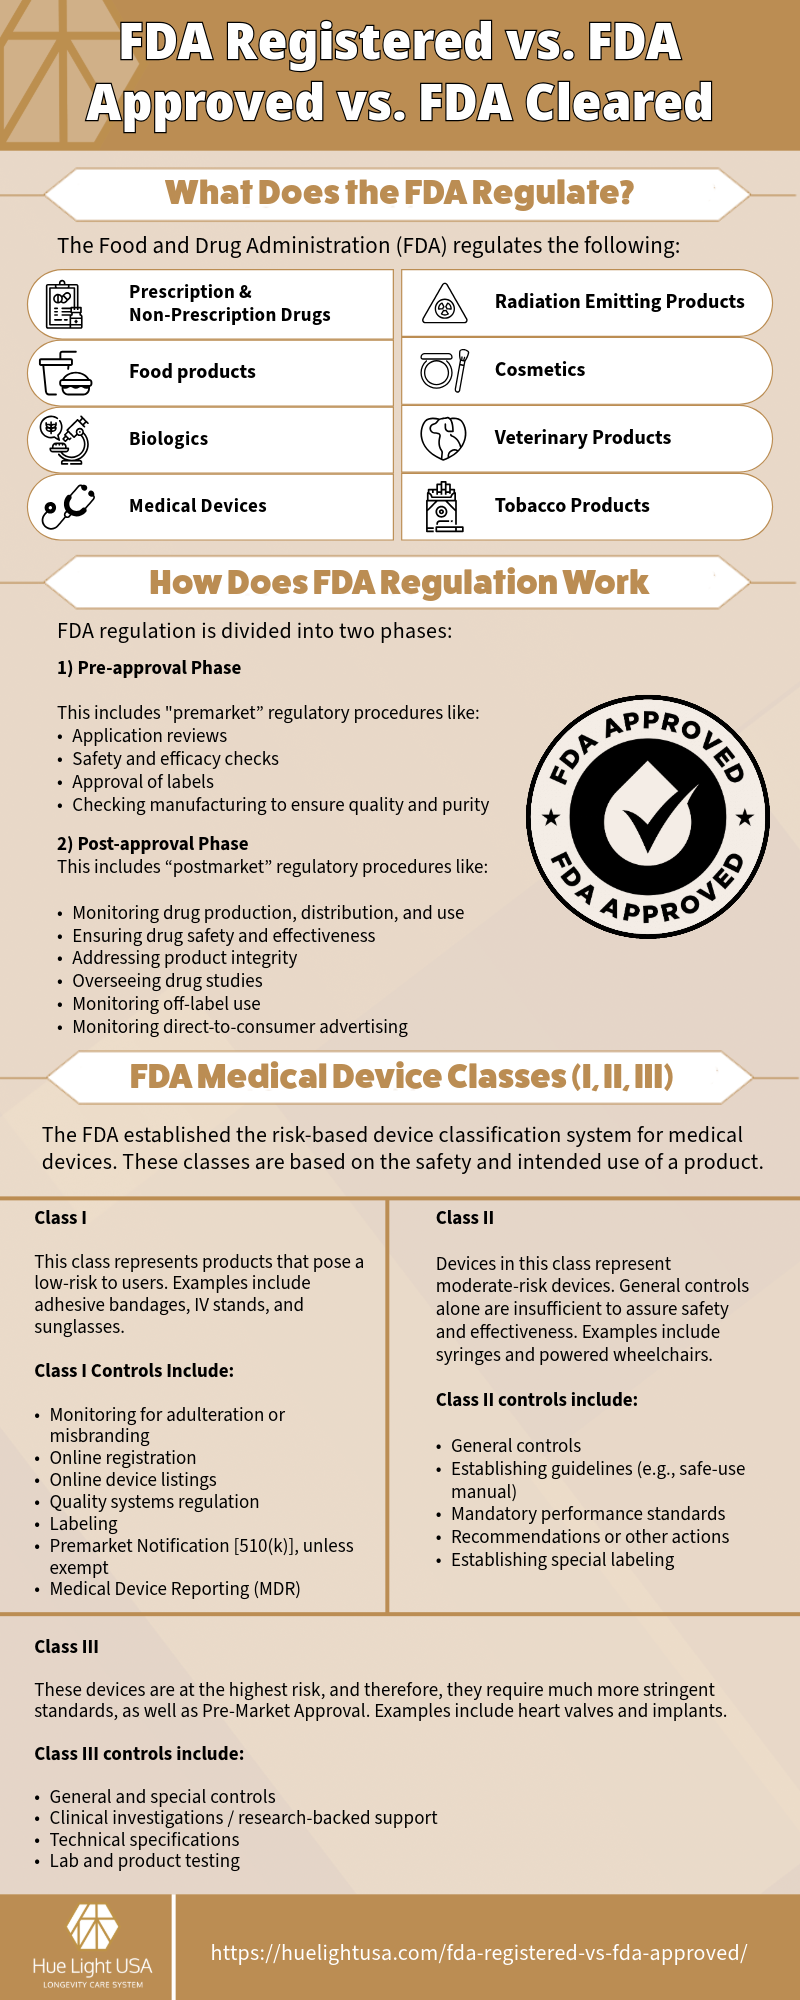 FDA-Registered vs FDA-Approved vs FDA-Cleared